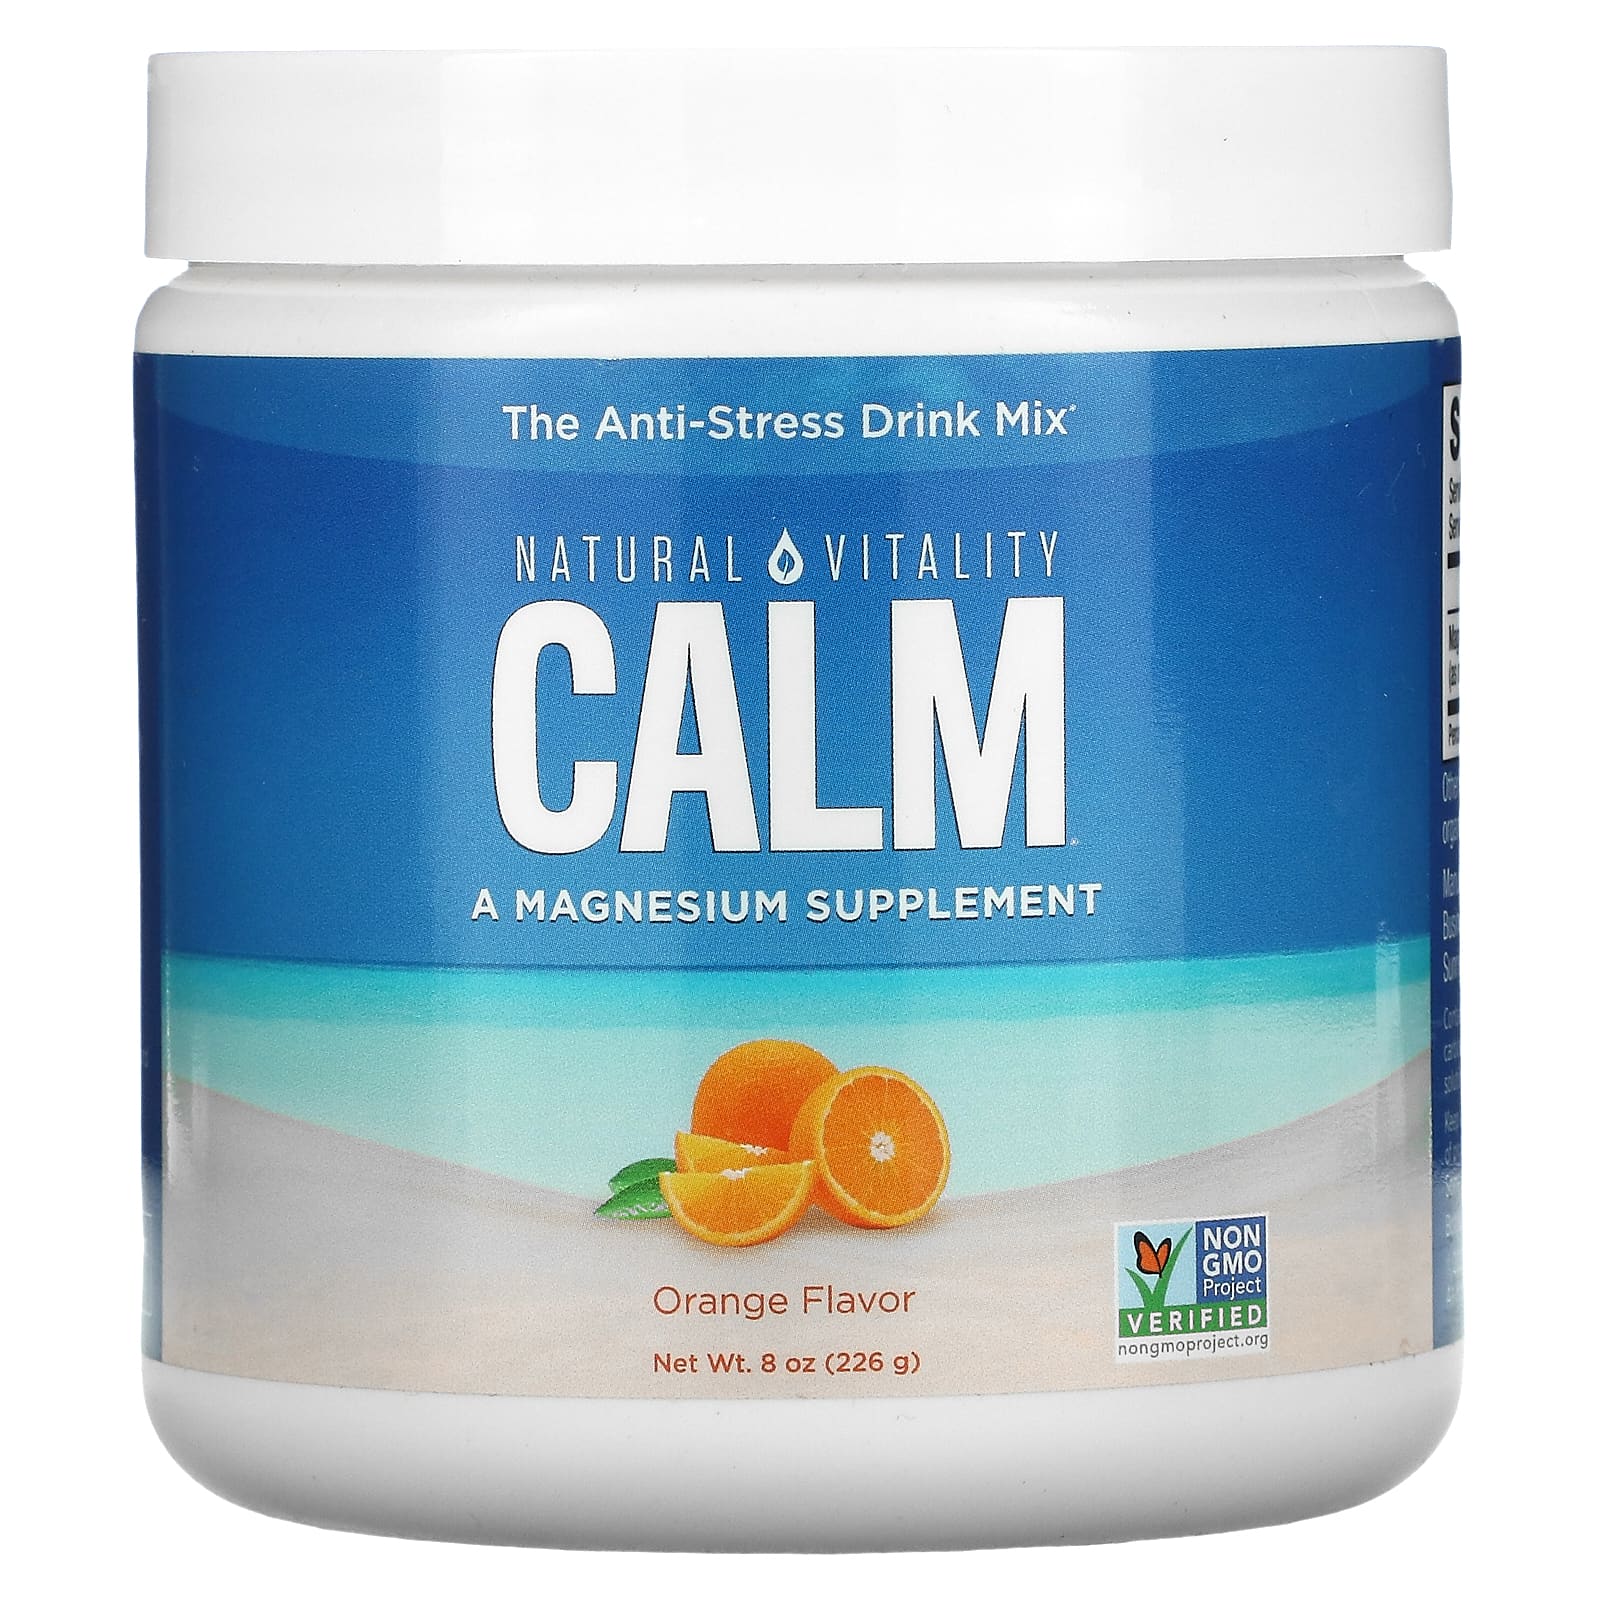 Natural Vitality CALM антистрессовая смесь для напитков апельсин 226 г (8 унций) natural vitality calm смесь для снятия стресса вишня 226 г 8 унций